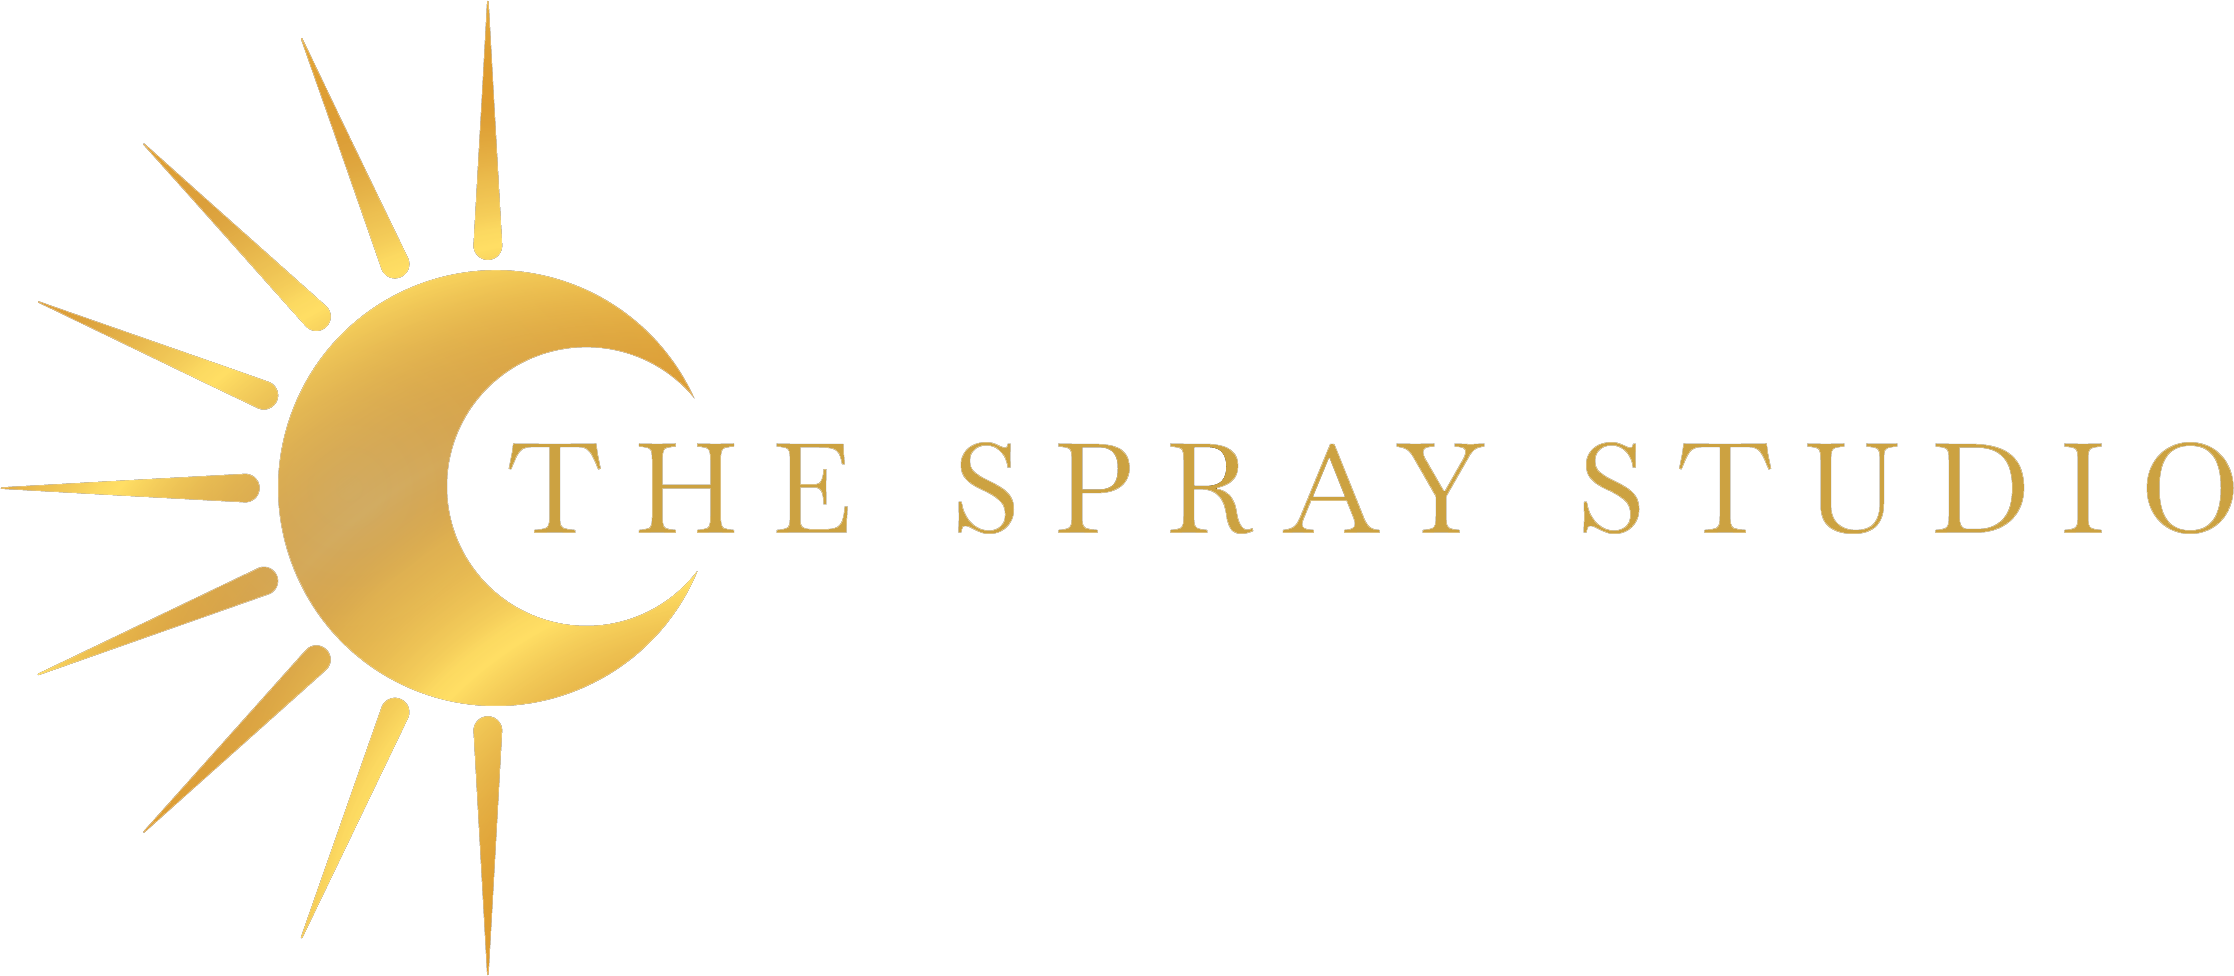 The Spray Studio